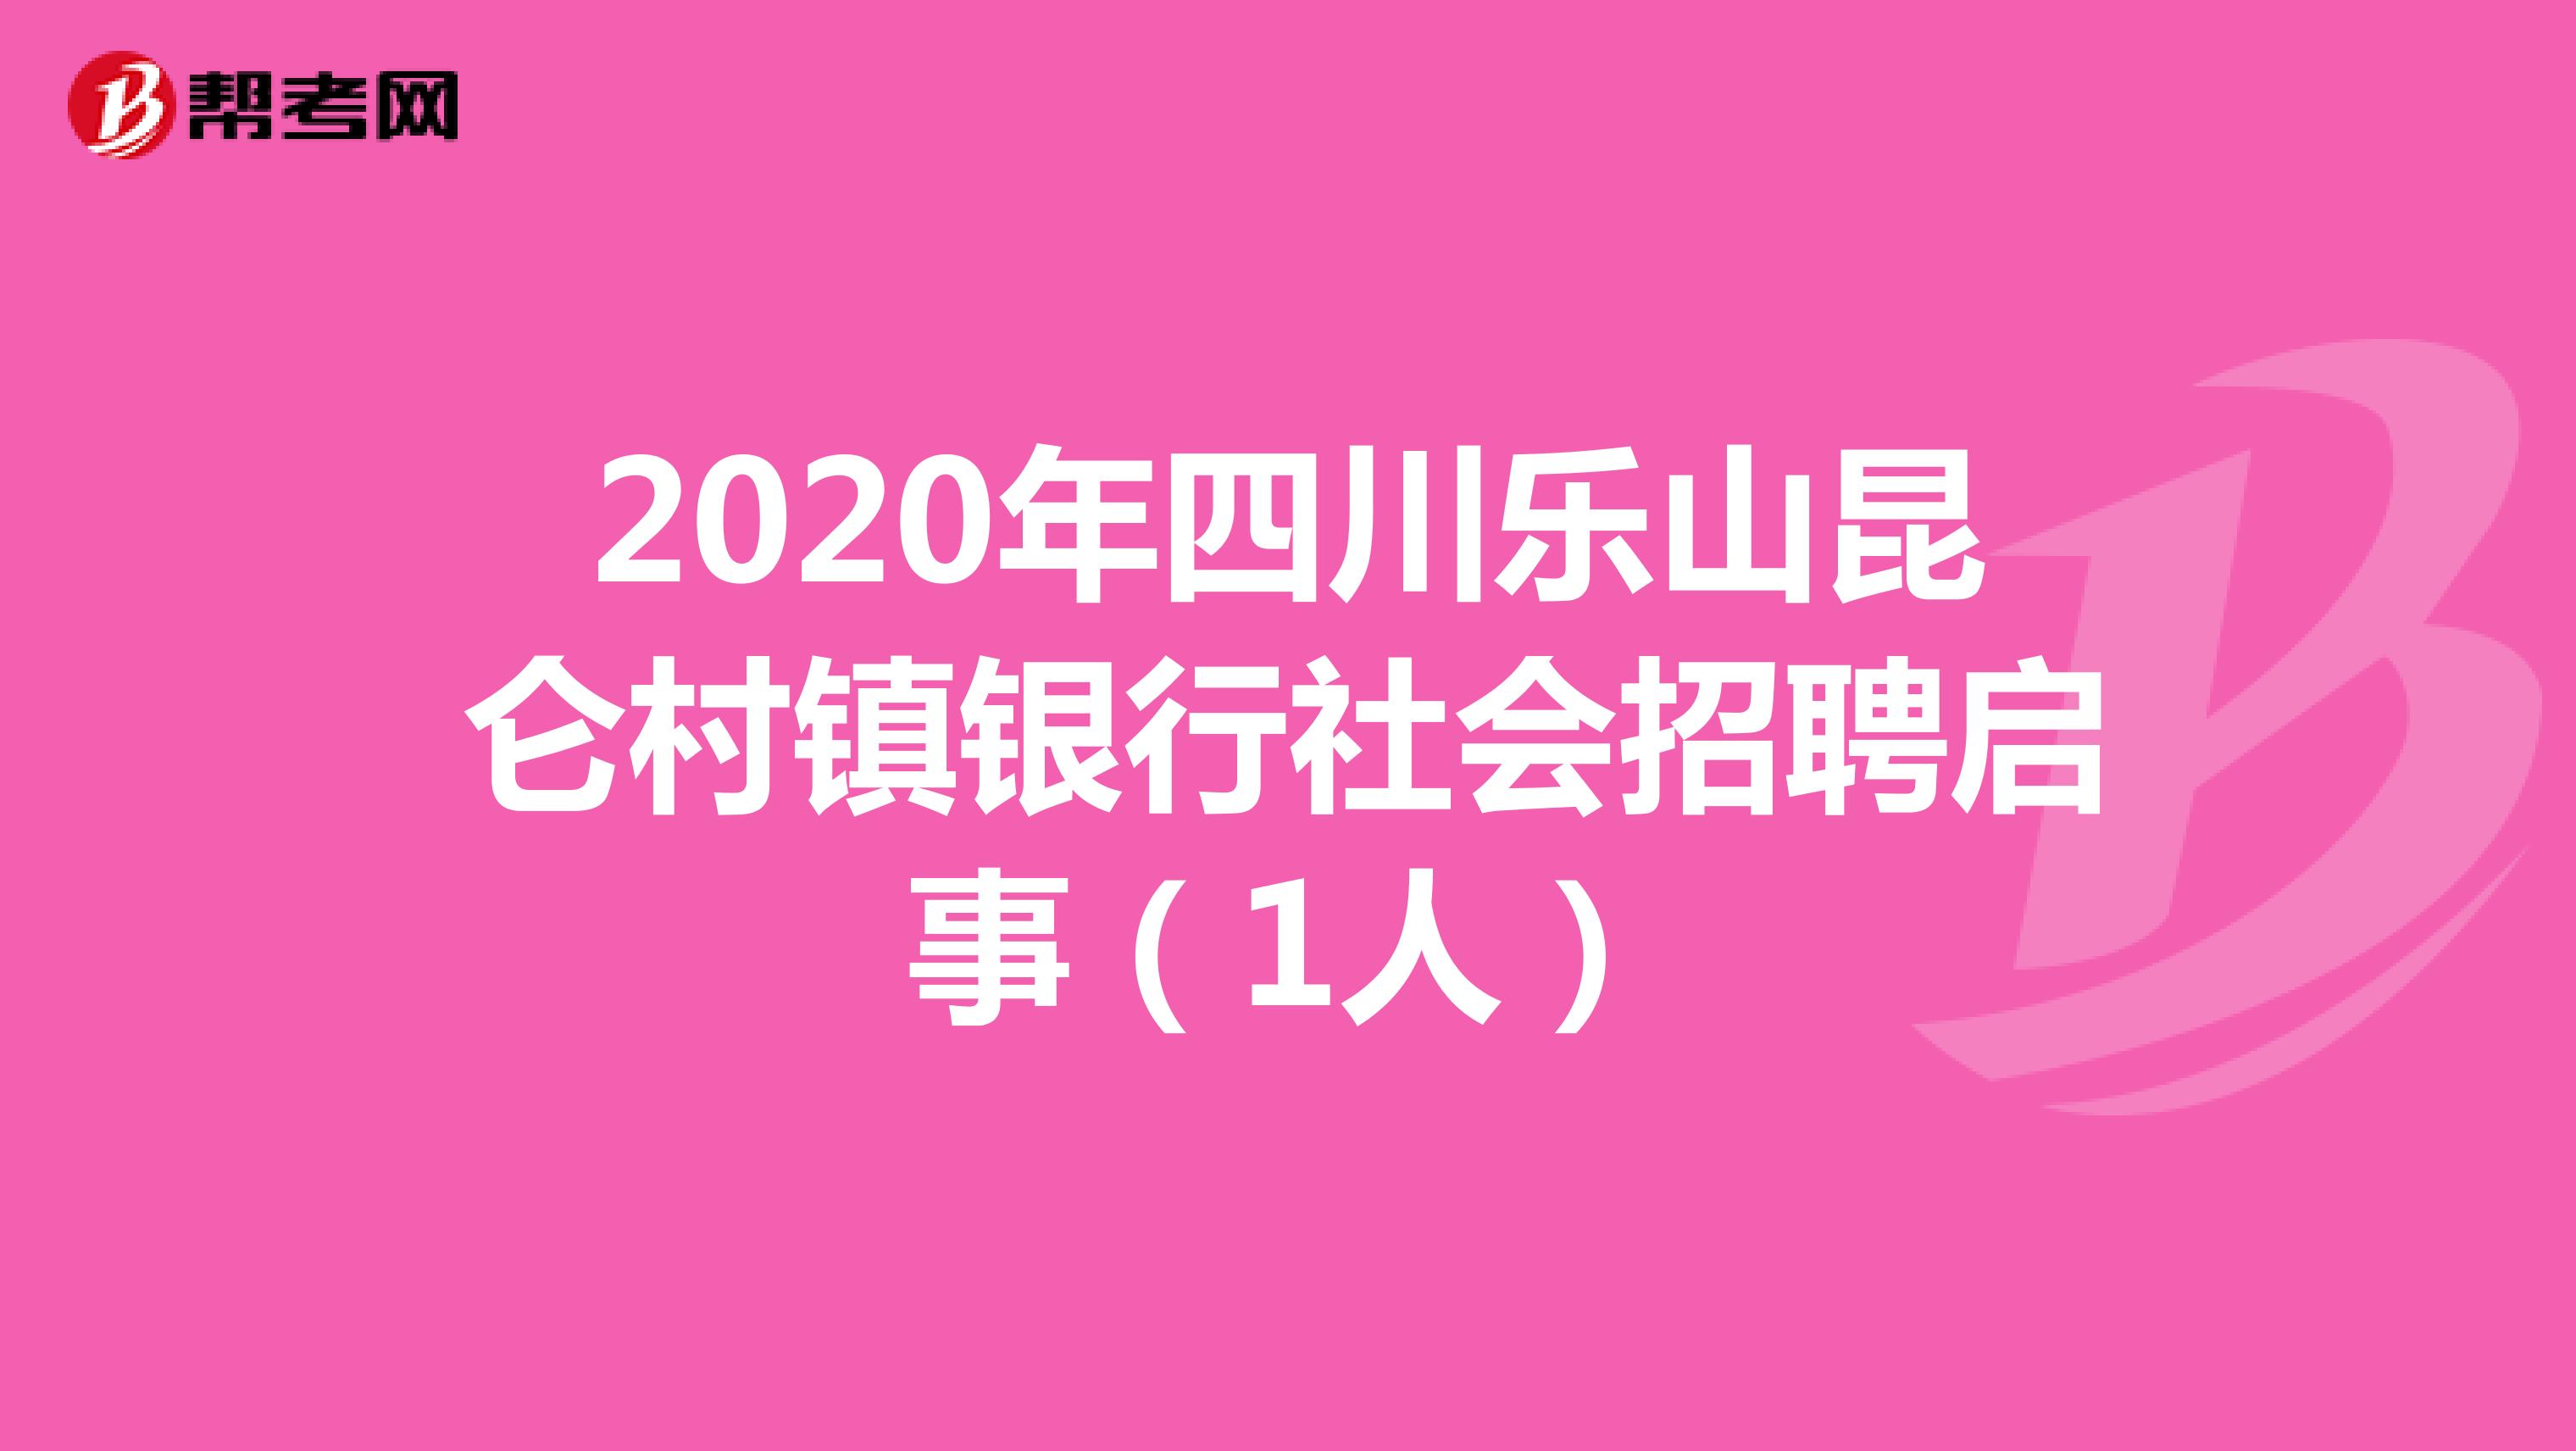 2020年四川乐山昆仑村镇银行社会招聘启事（1人）